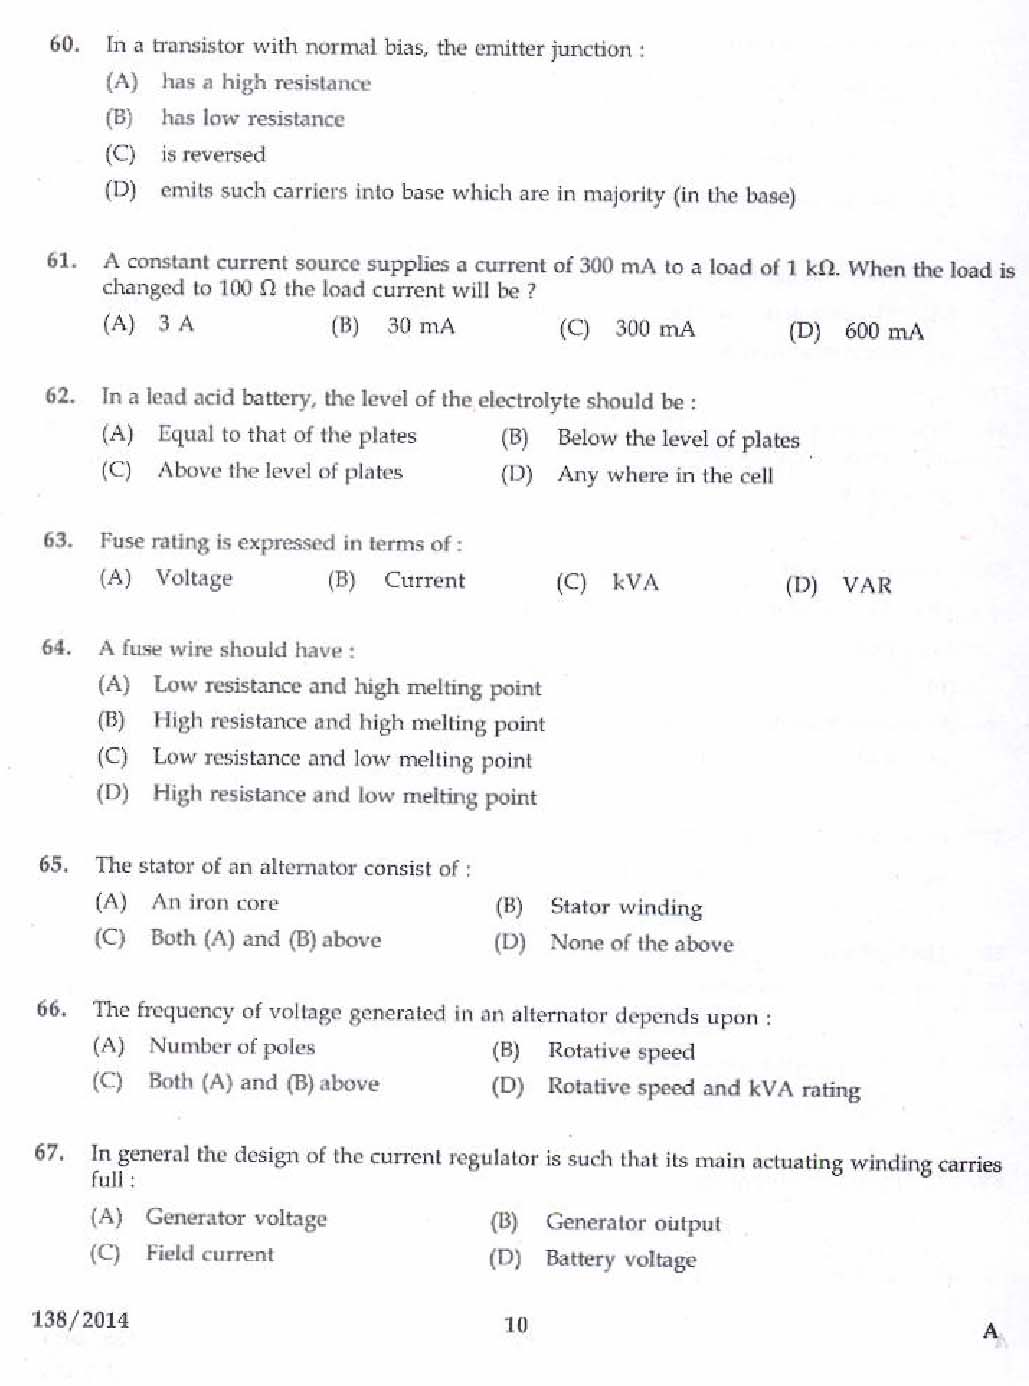 Kerala PSC Junior Instructor Exam Question Paper Code 1382014 8